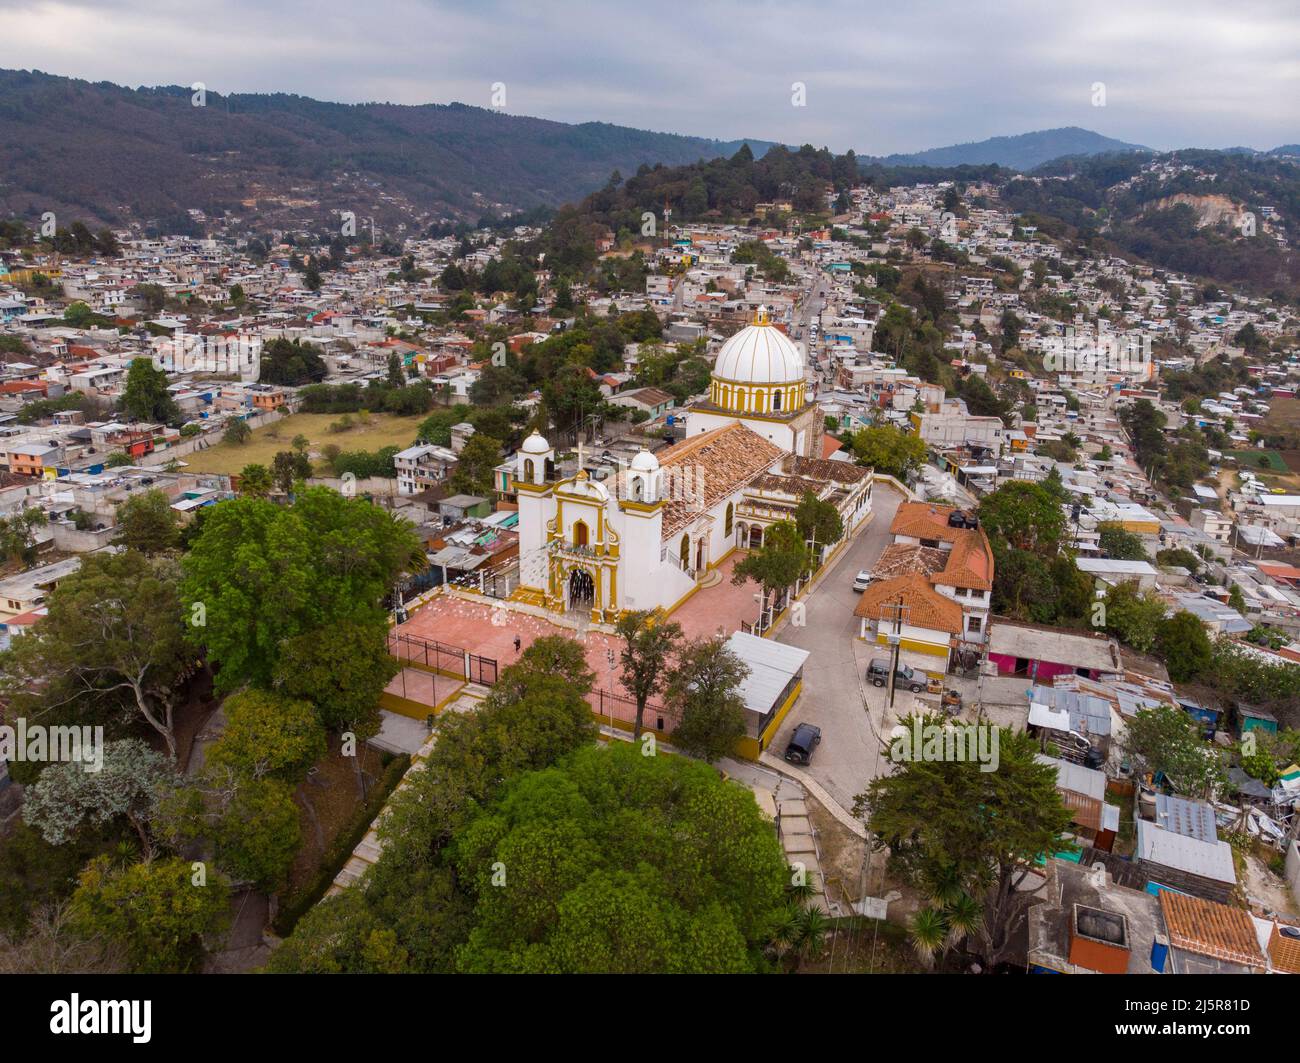 Aerial drone hsot of Guadalupe Church in San Cristobal de las Casas. Iglesia de Nuestra Senora de Guadalupe on the hill Stock Photo